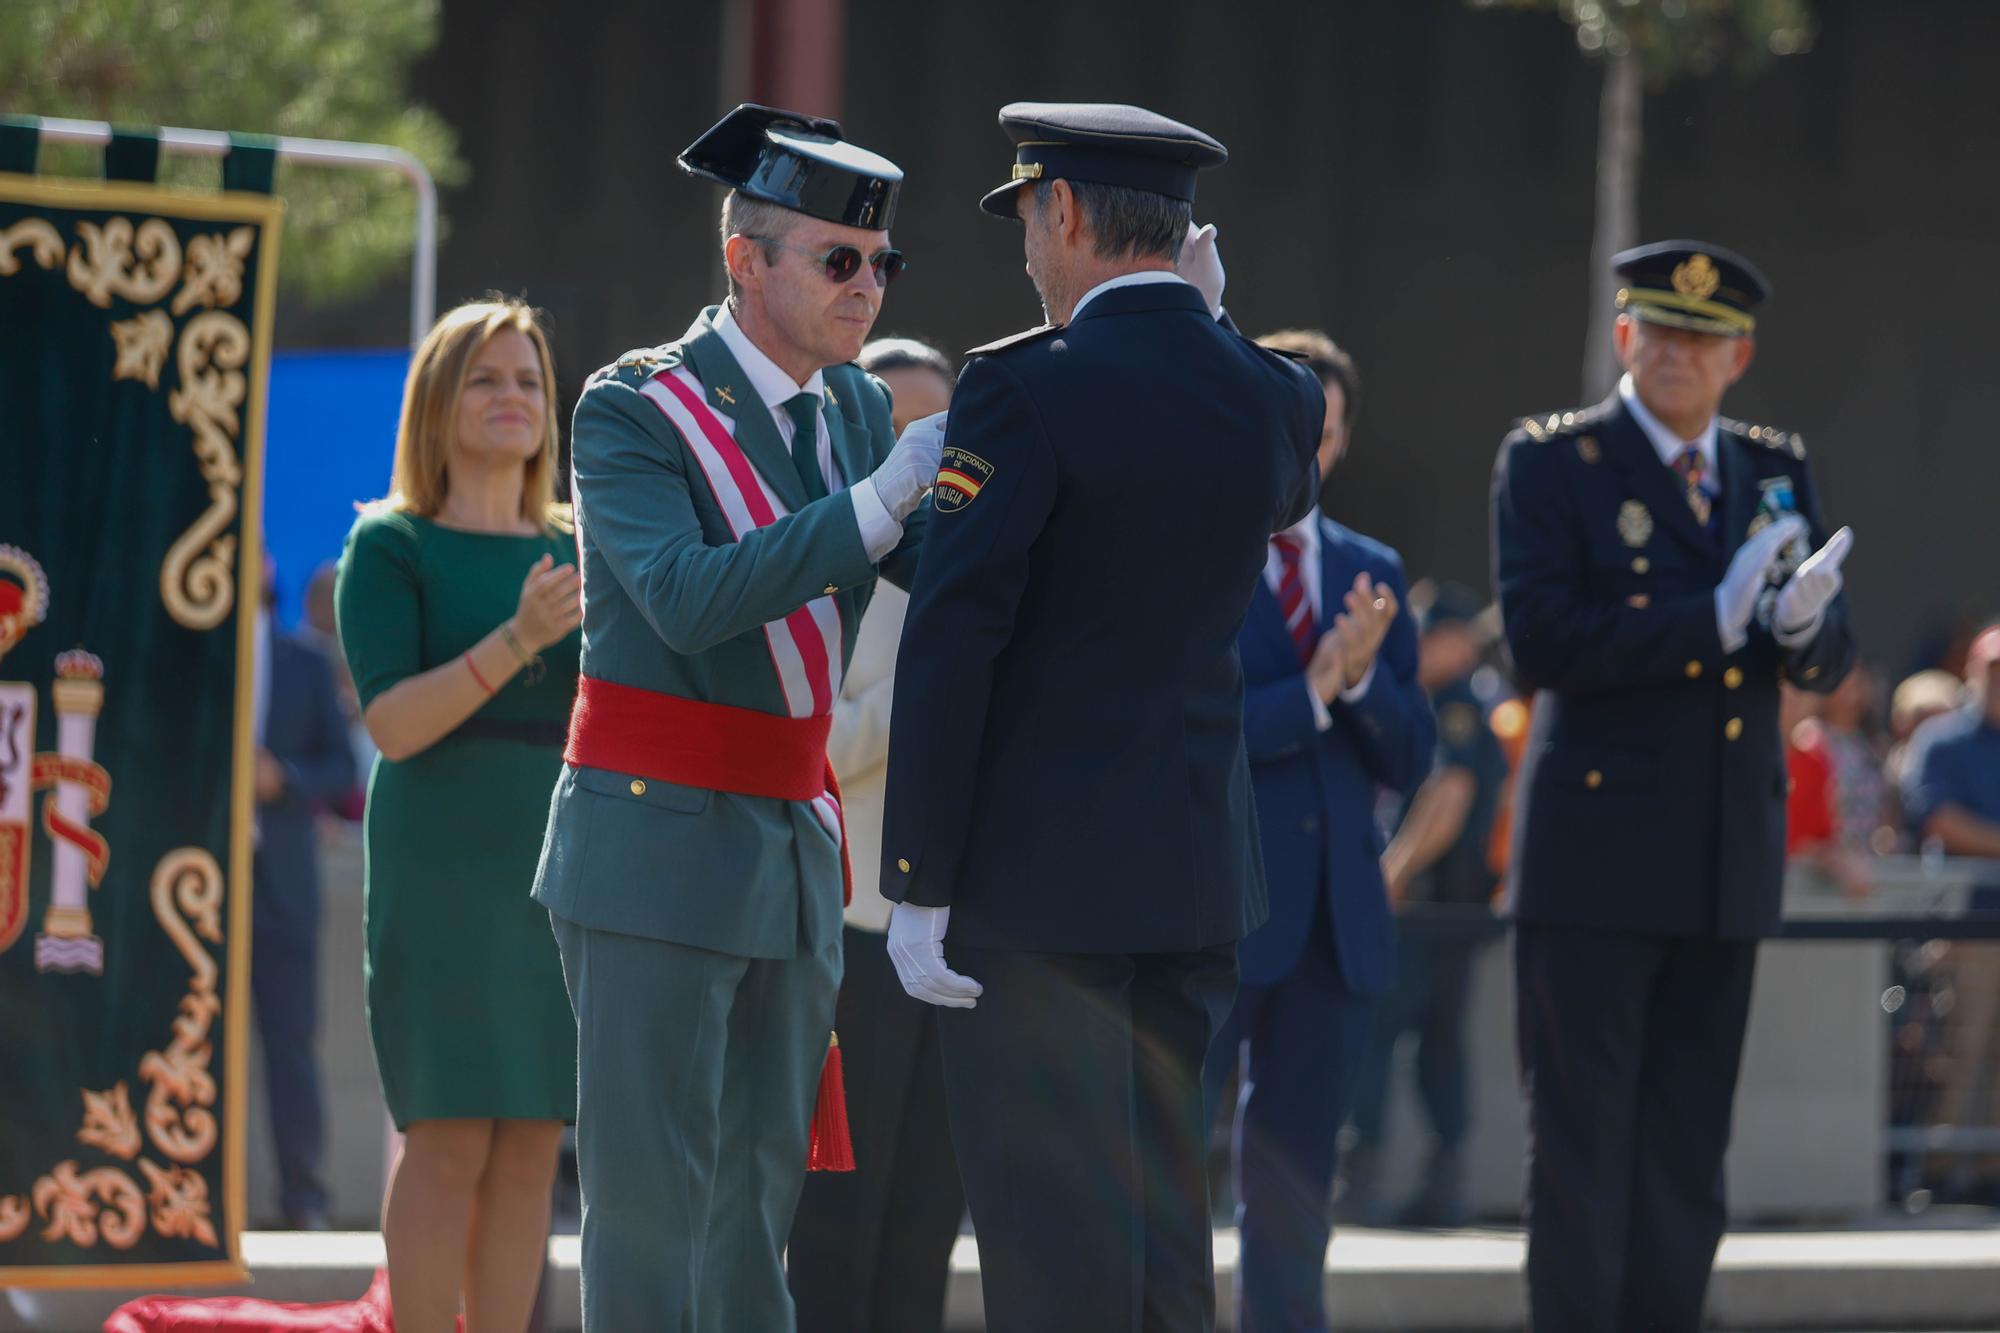 La Guardia Civil celebra el día de su patrona